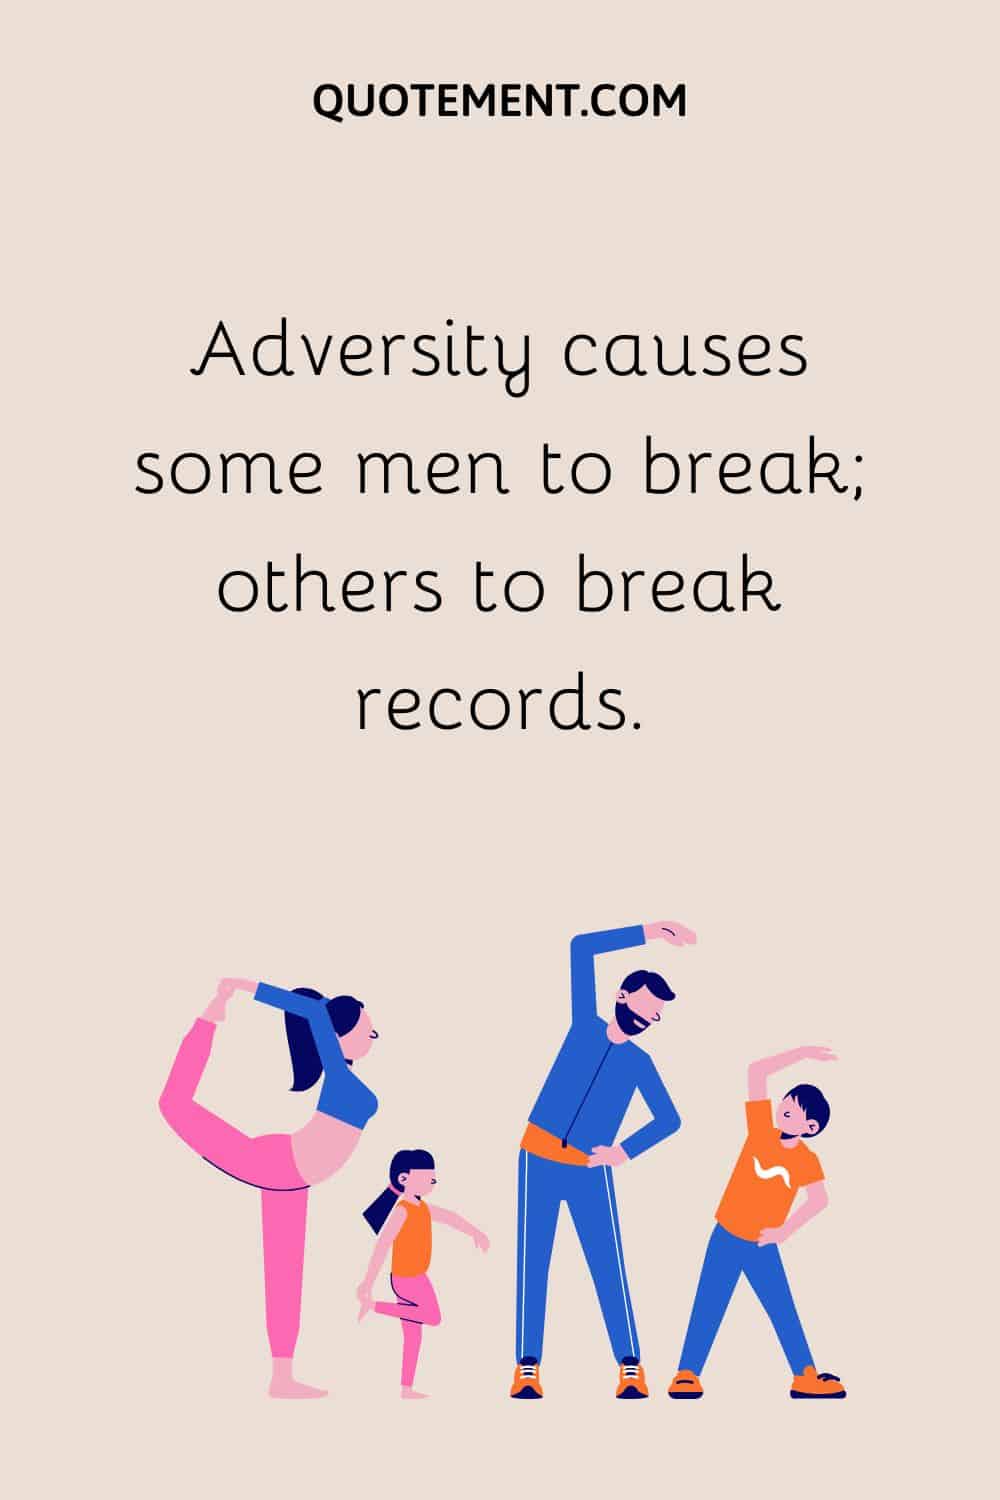 Adversity causes some men to break